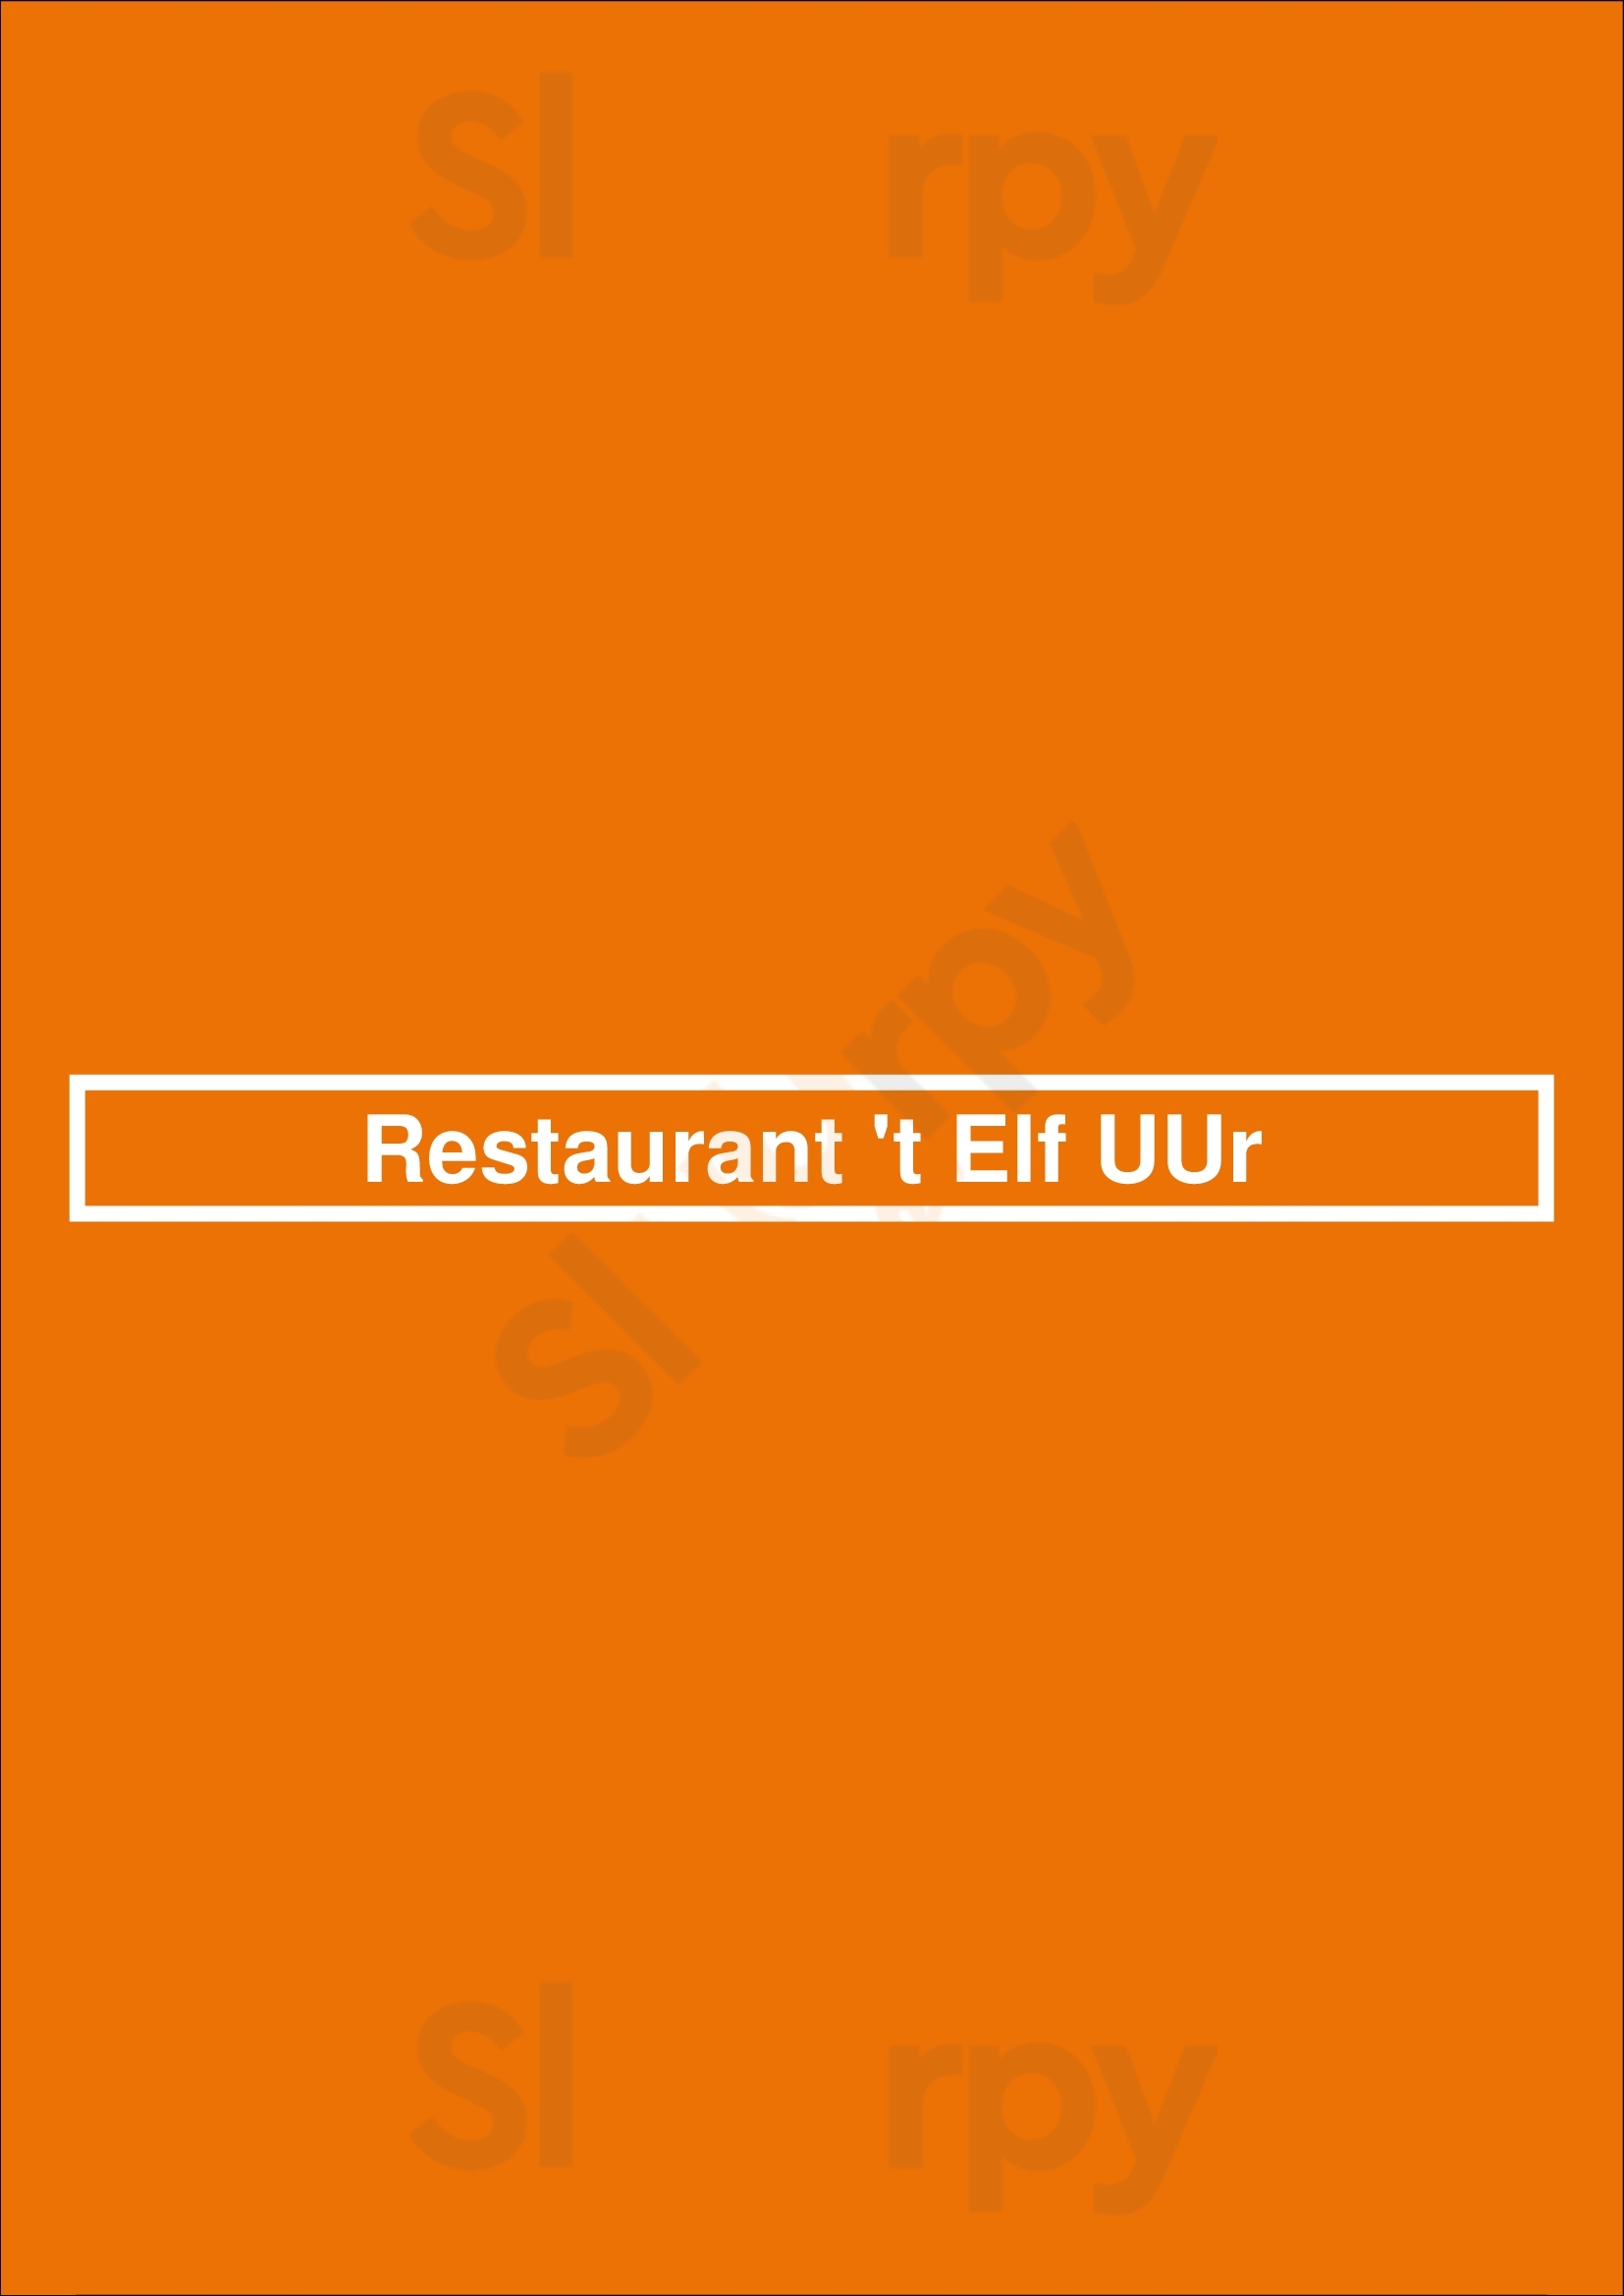 Restaurant 't Elf Uur Gorssel Menu - 1